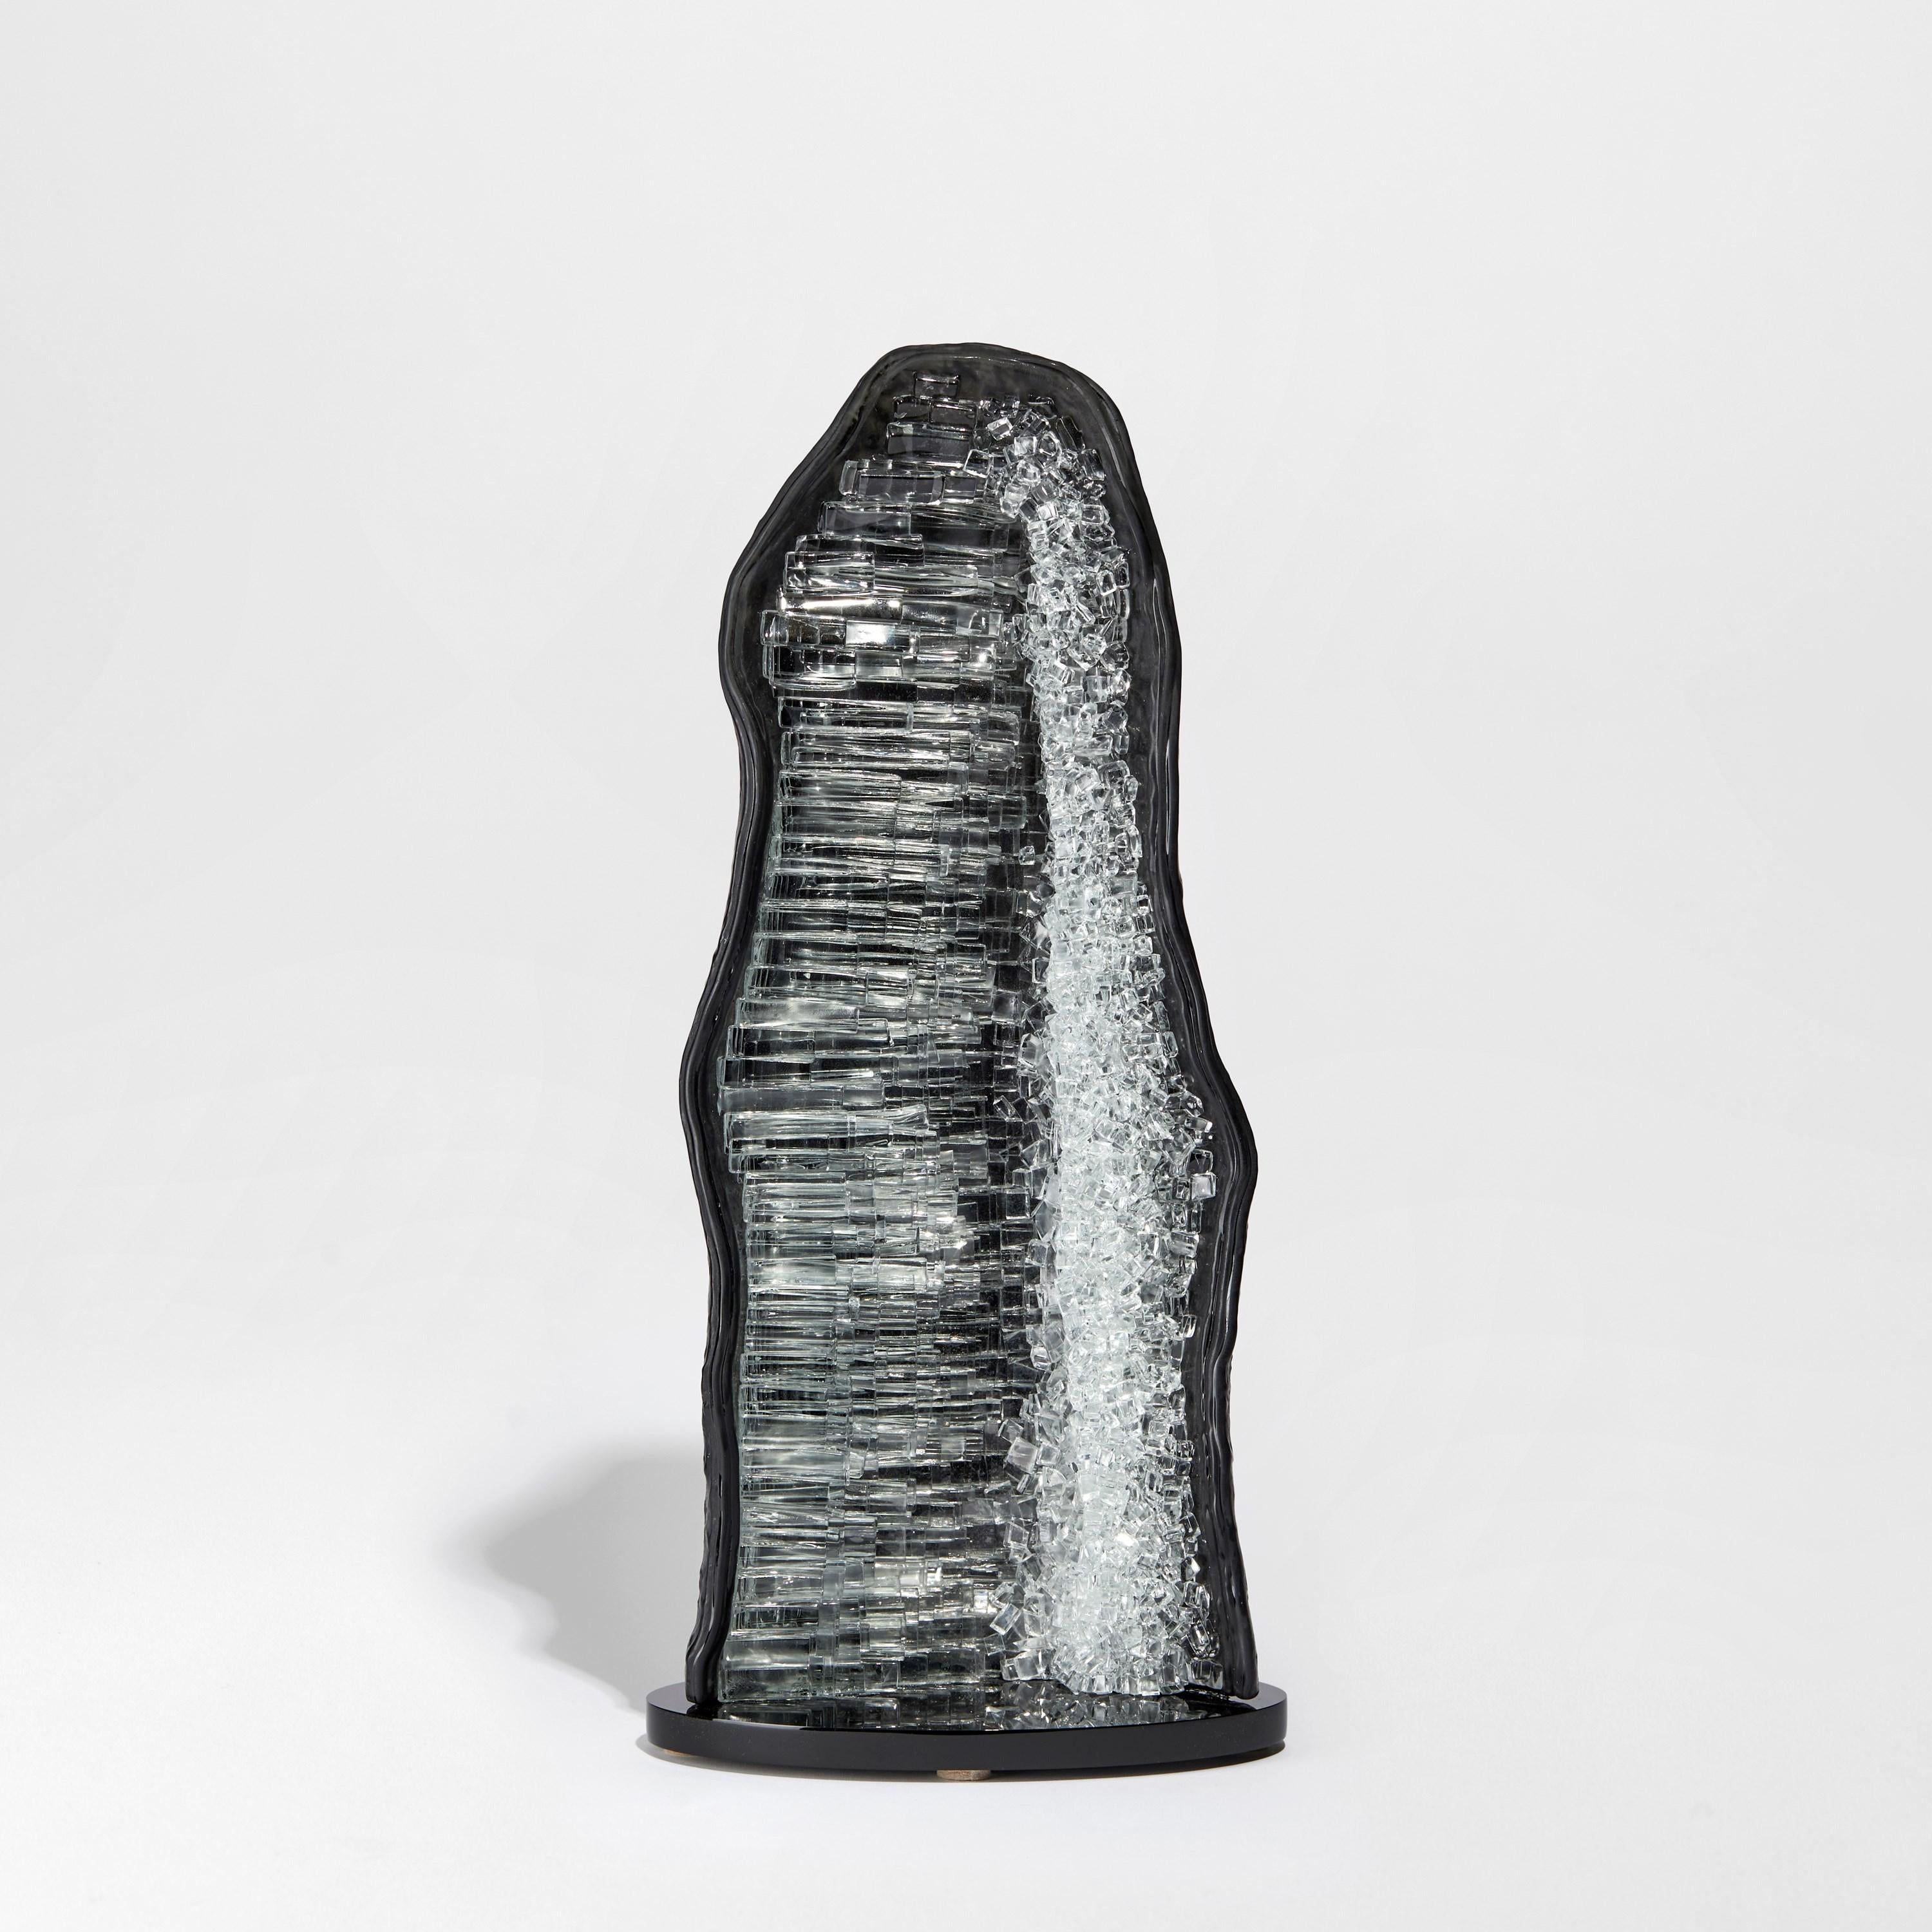 Celestite III ist eine einzigartige graue und klare Glasskulptur des britischen Künstlers Wayne Charmer. Inspiriert von dem Moment, in dem ein Gesteinsbrocken buchstäblich aufgesprengt wird, um einen Teppich aus funkelnden Edelsteinen freizulegen,